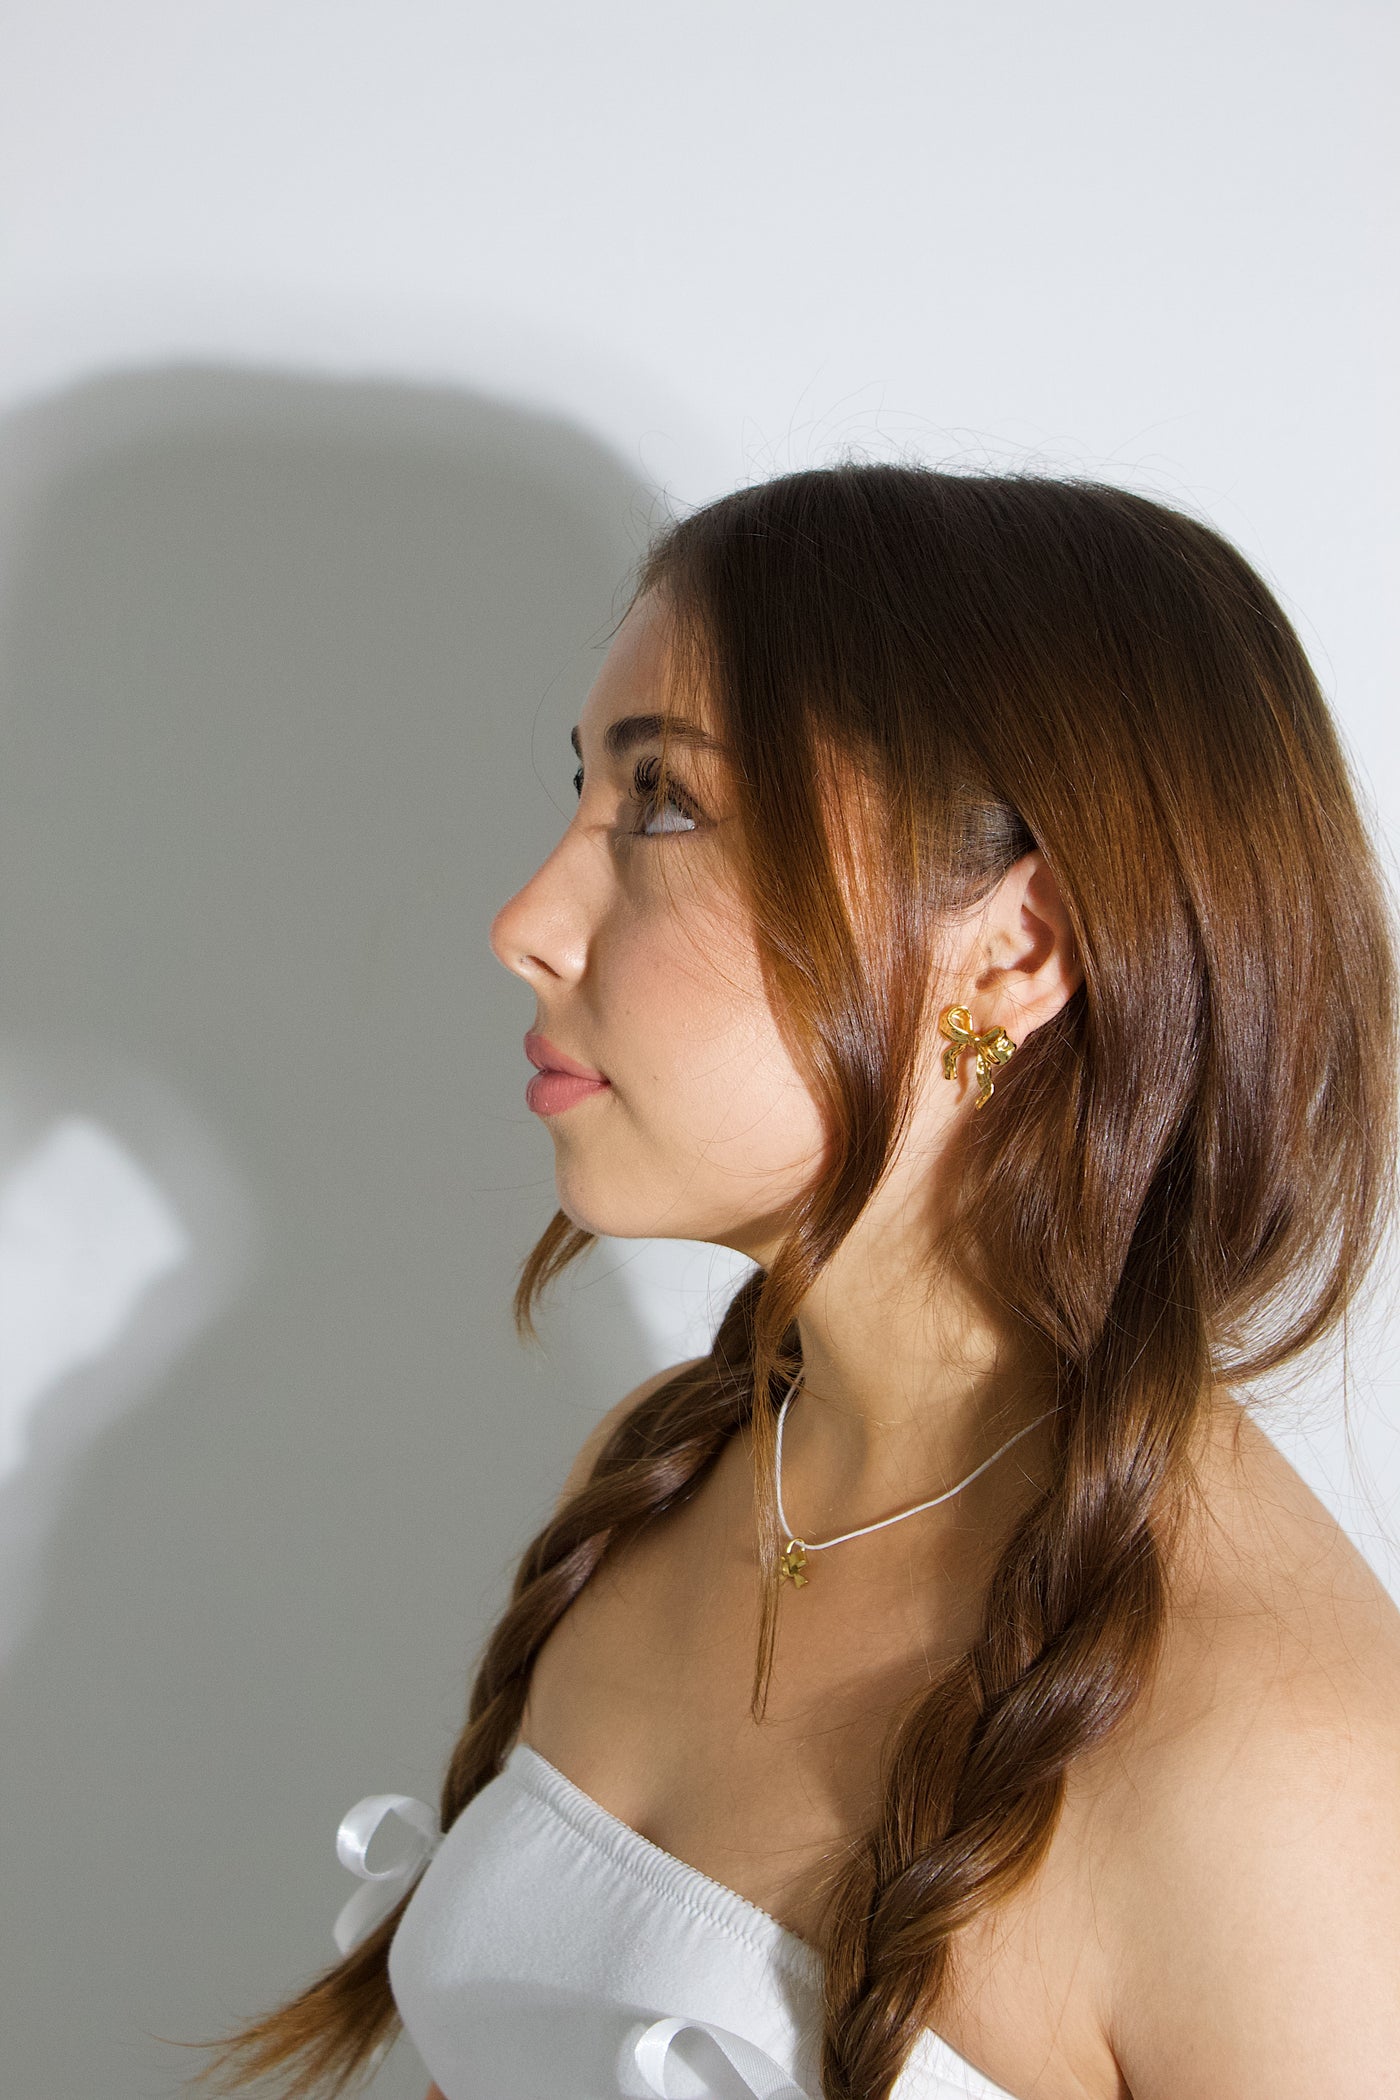 Gold Bow earrings